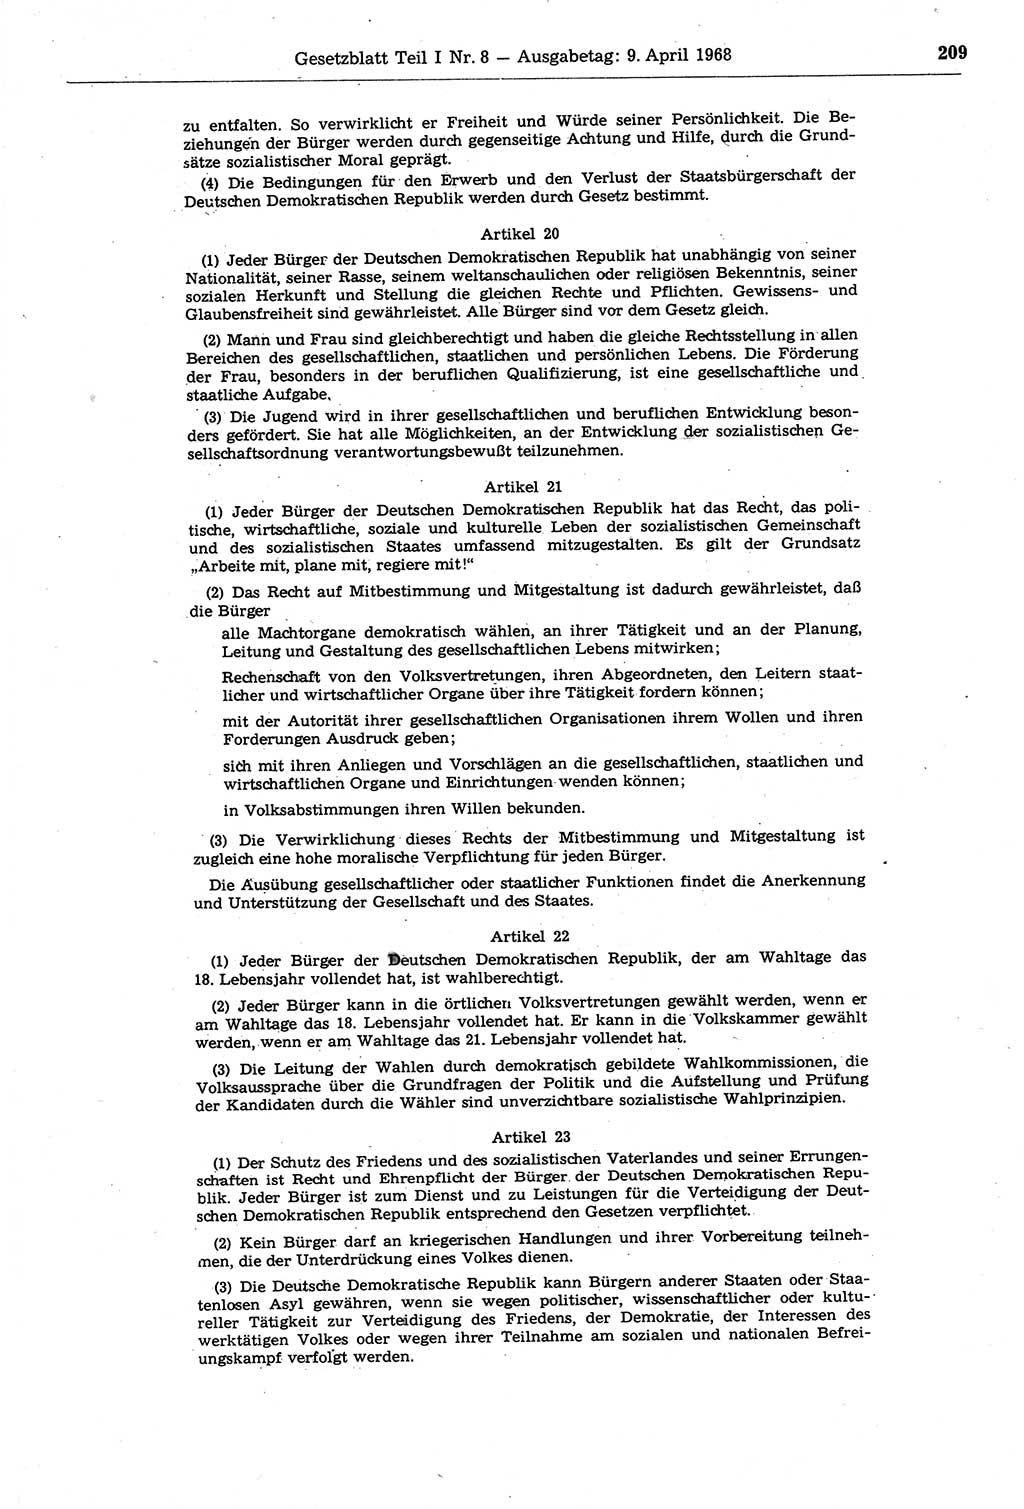 Gesetzblatt (GBl.) der Deutschen Demokratischen Republik (DDR) Teil Ⅰ 1968, Seite 209 (GBl. DDR Ⅰ 1968, S. 209)